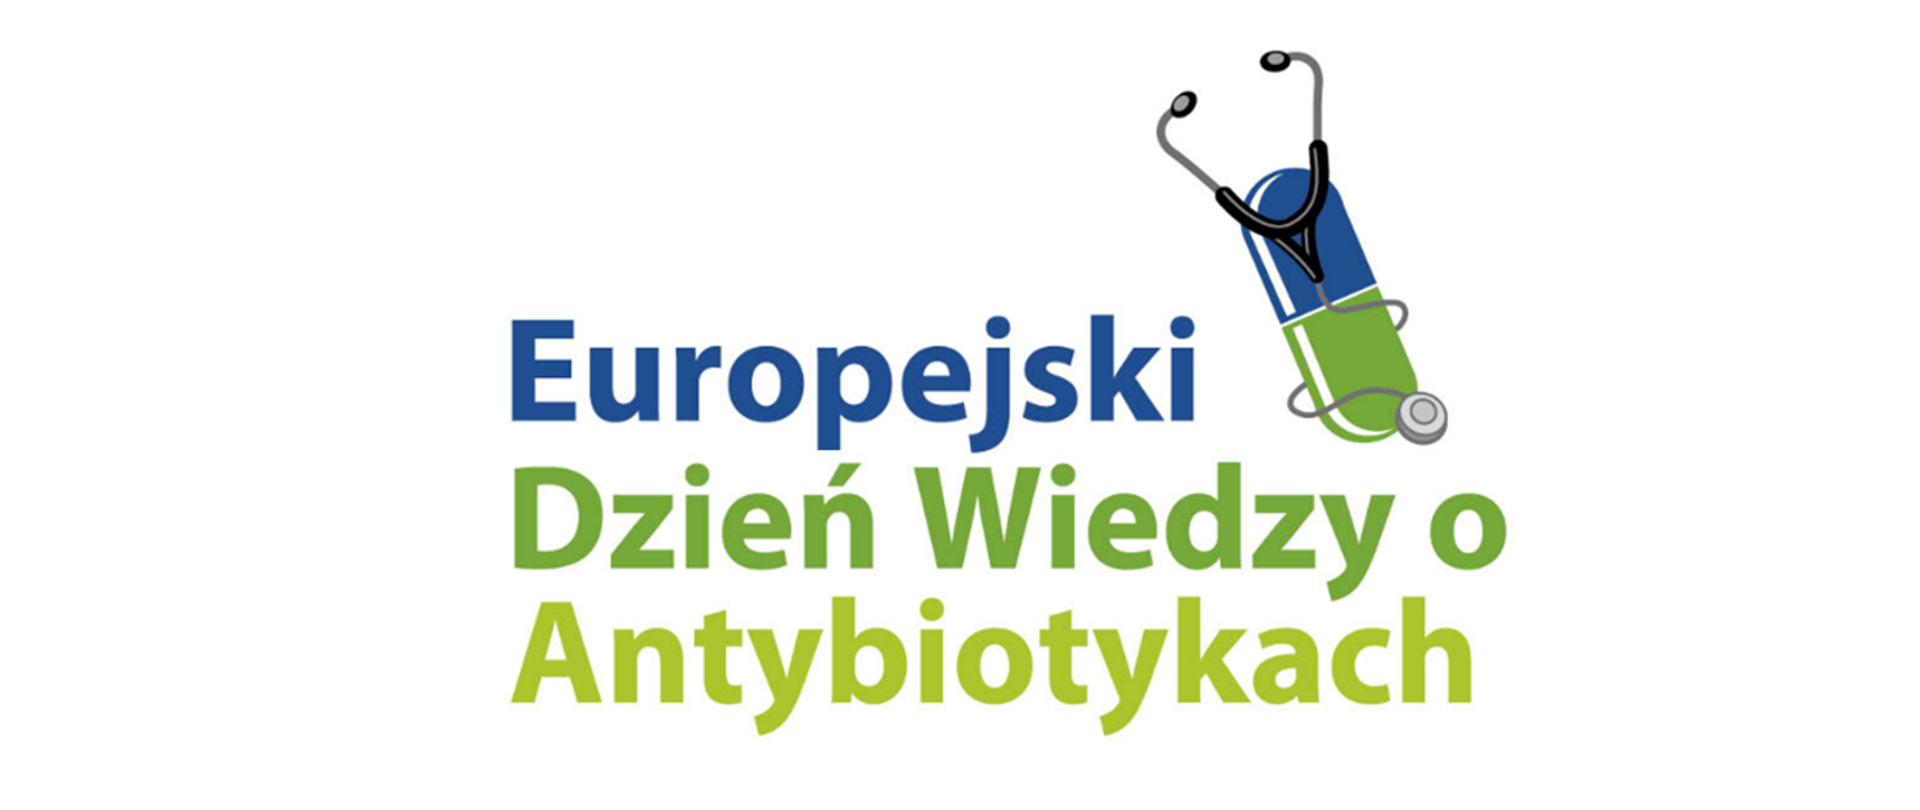 Na zdjęciu napis: Europejski Dzień Wiedzy o antybiotykach